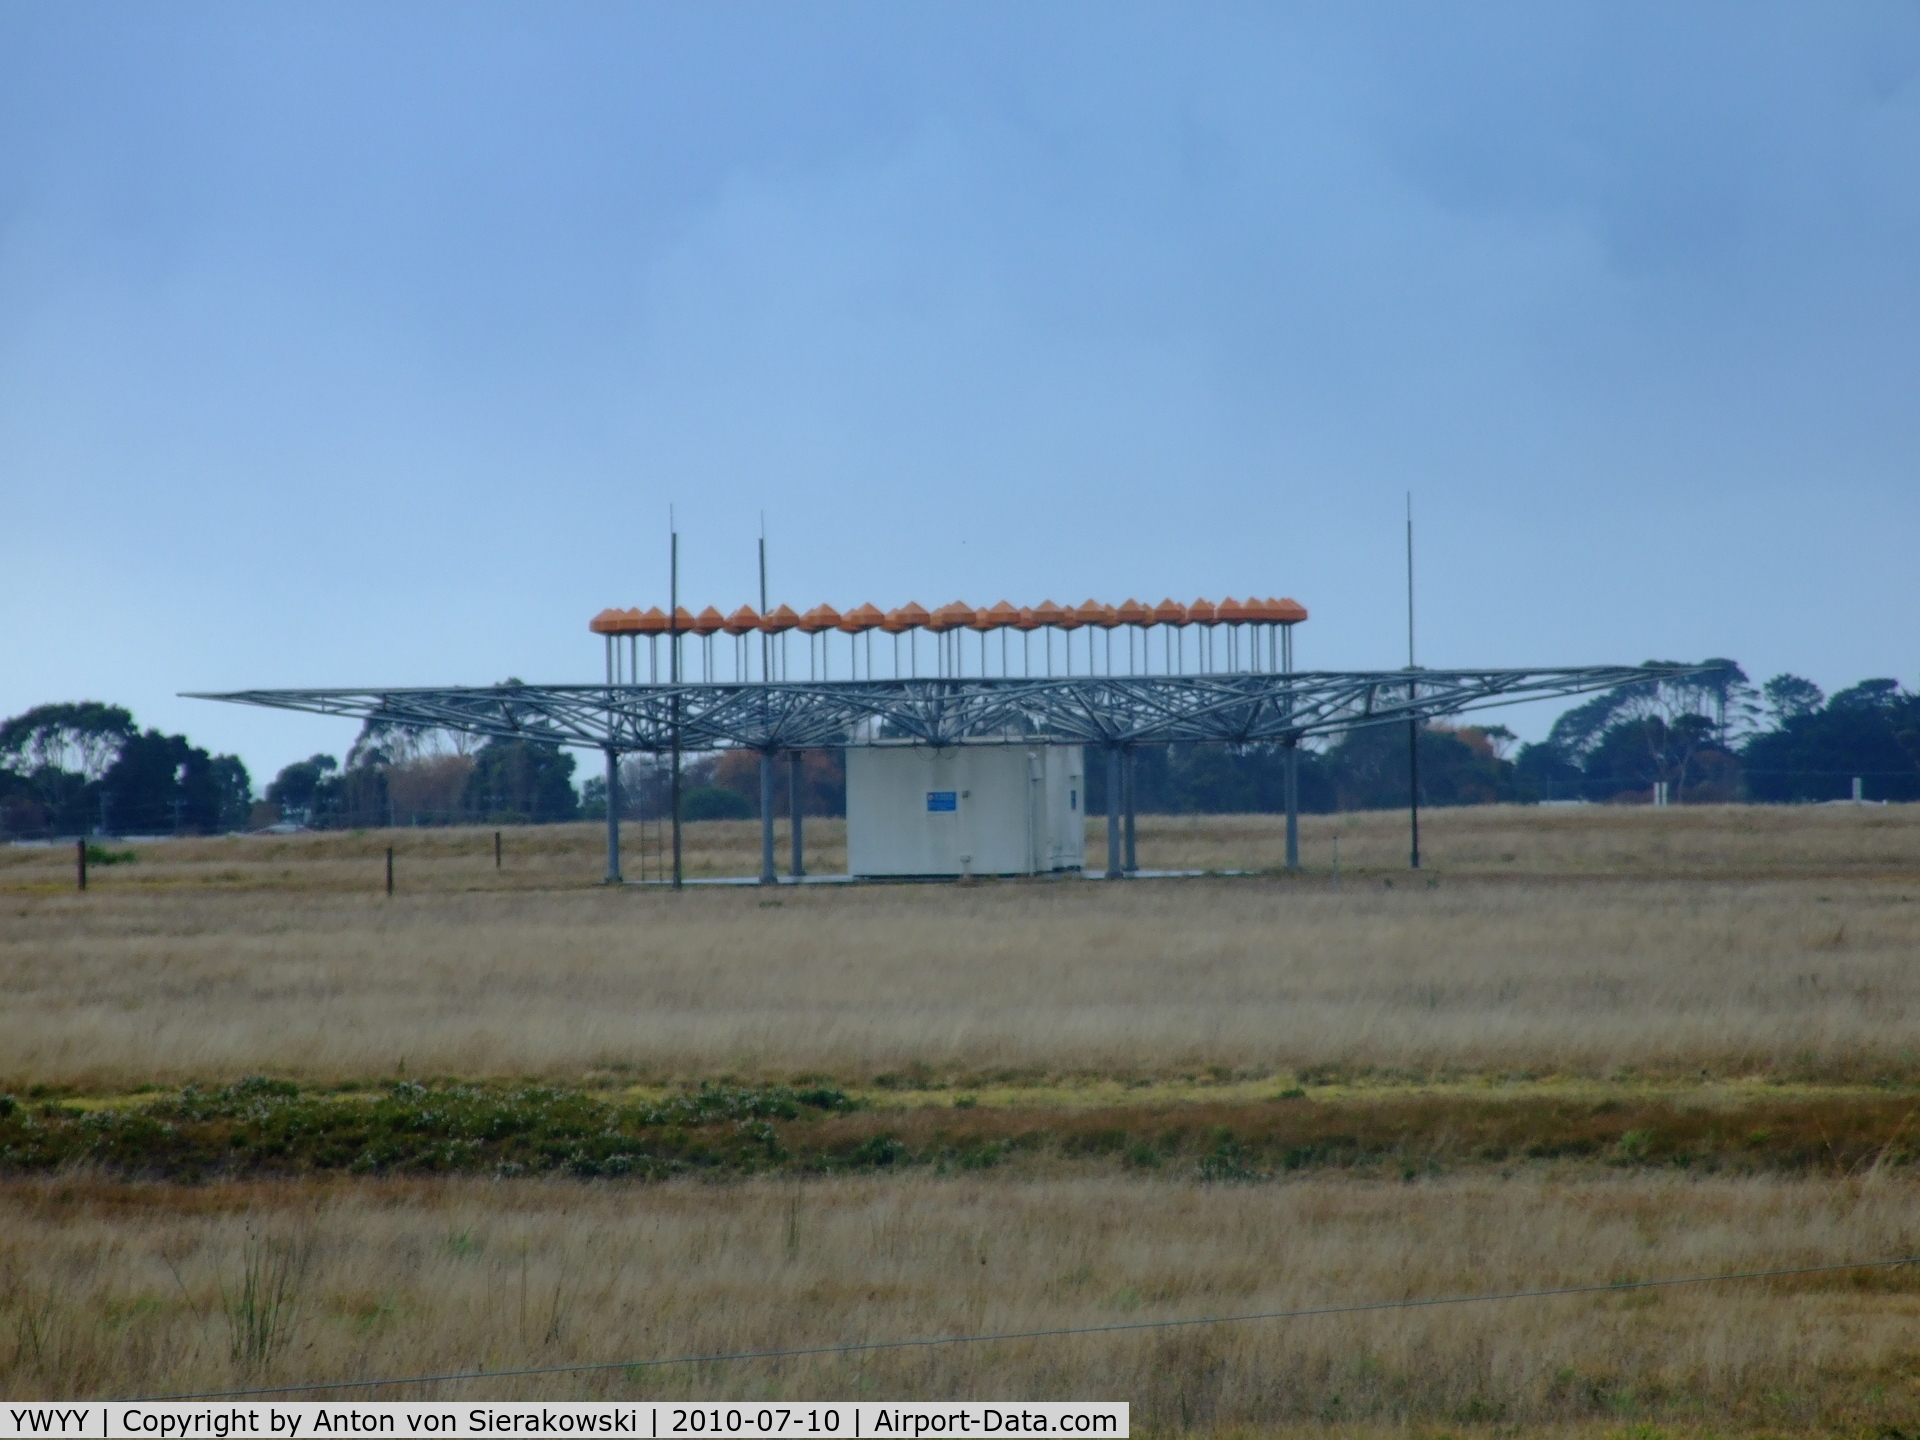 Burnie Airport, Wynyard, Tasmania Australia (YWYY) - VOR omni antenna at YWYY